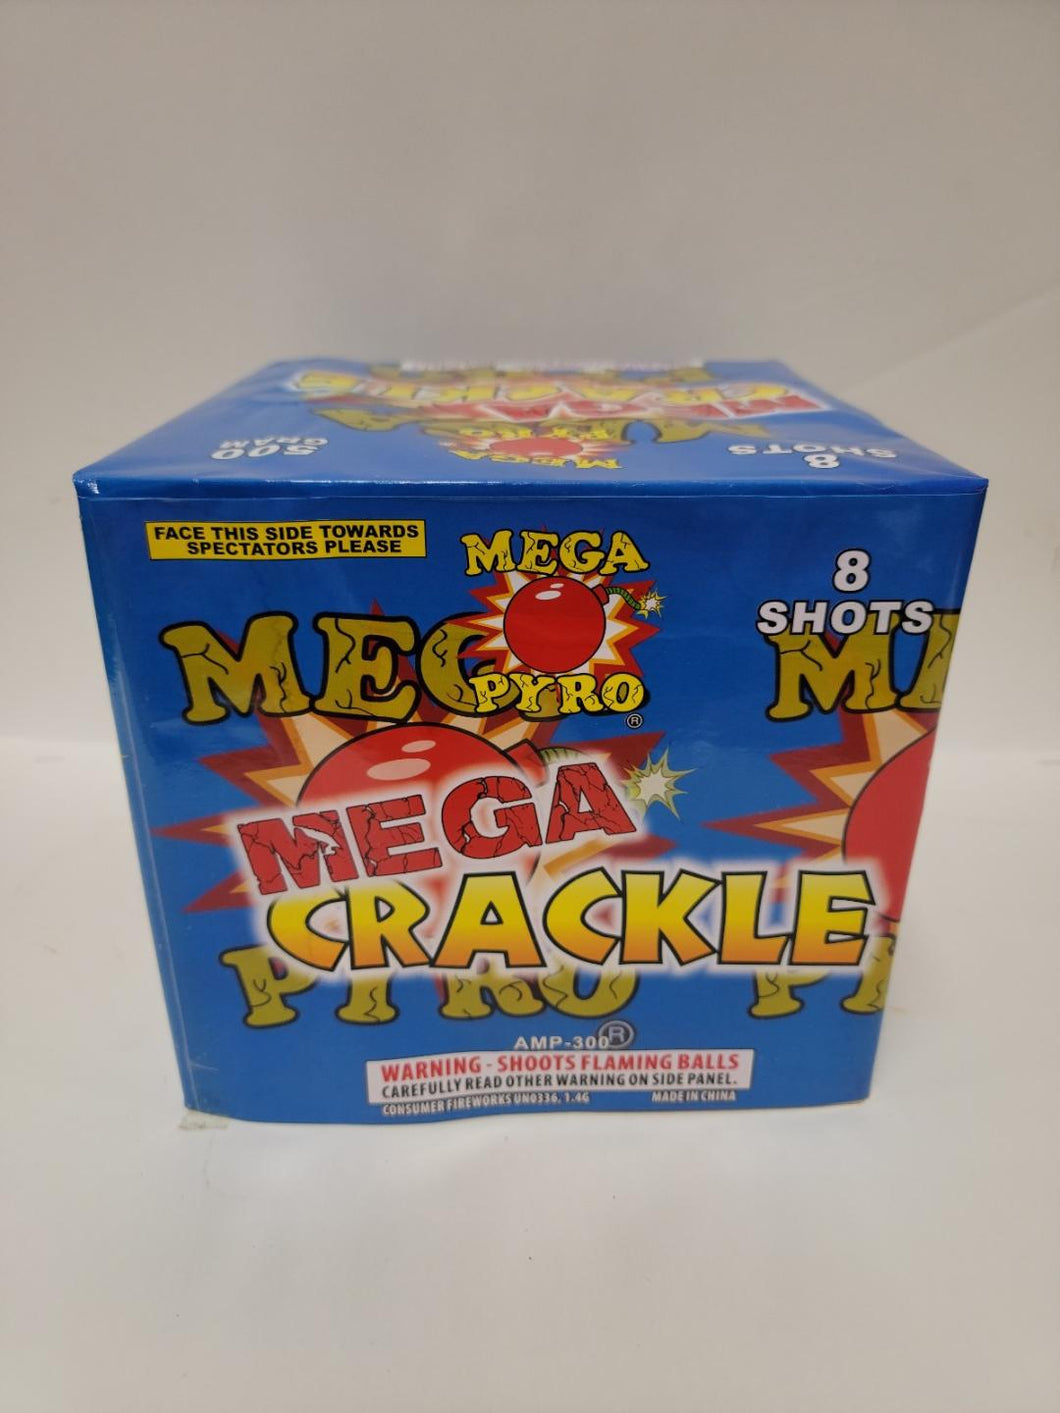 MEGA CRACKLE